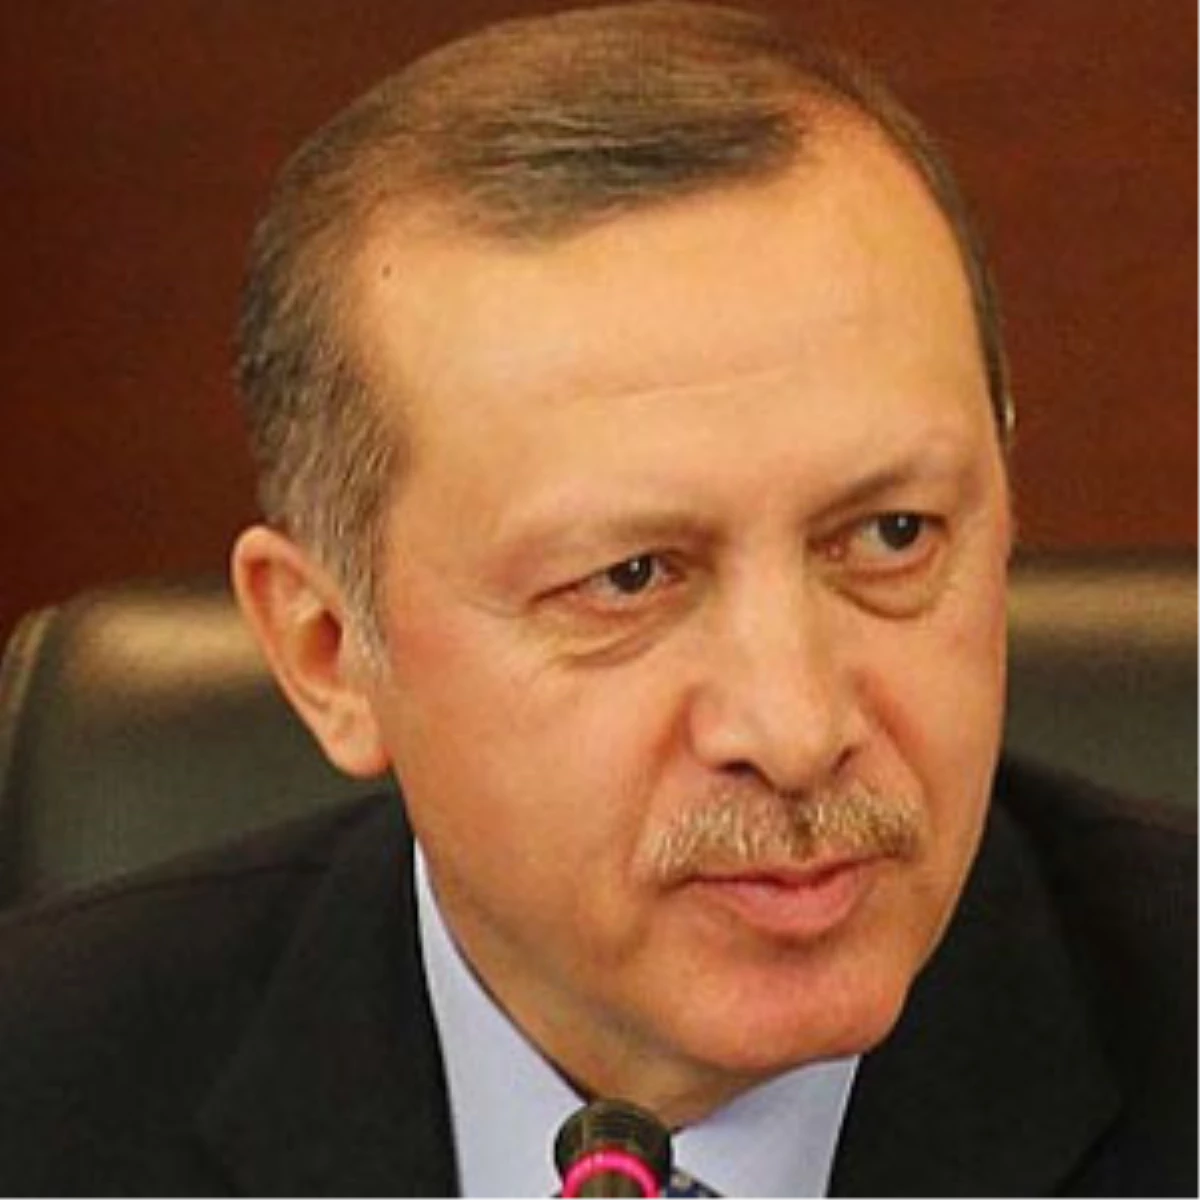 Azerilerin Gözdesi Erdoğan Oldu